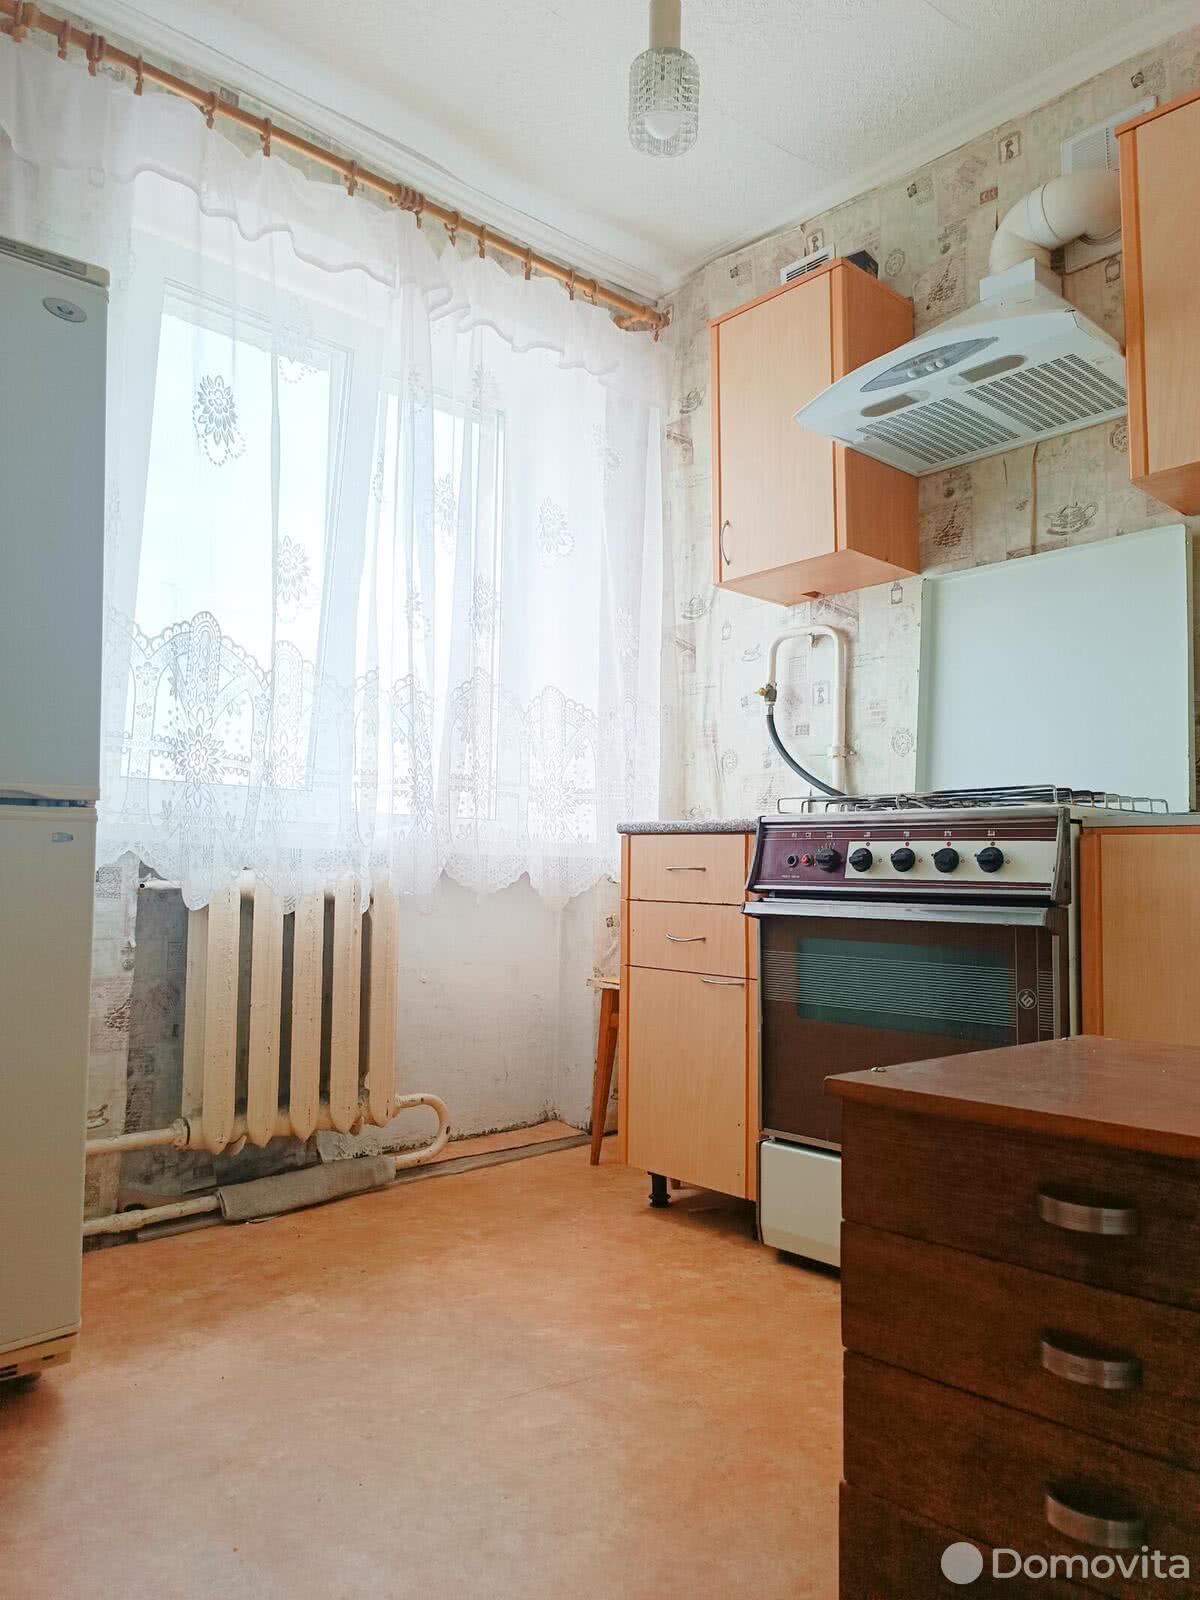 квартира, Борисов, ул. Чапаева, д. 23, стоимость продажи 70 765 р.